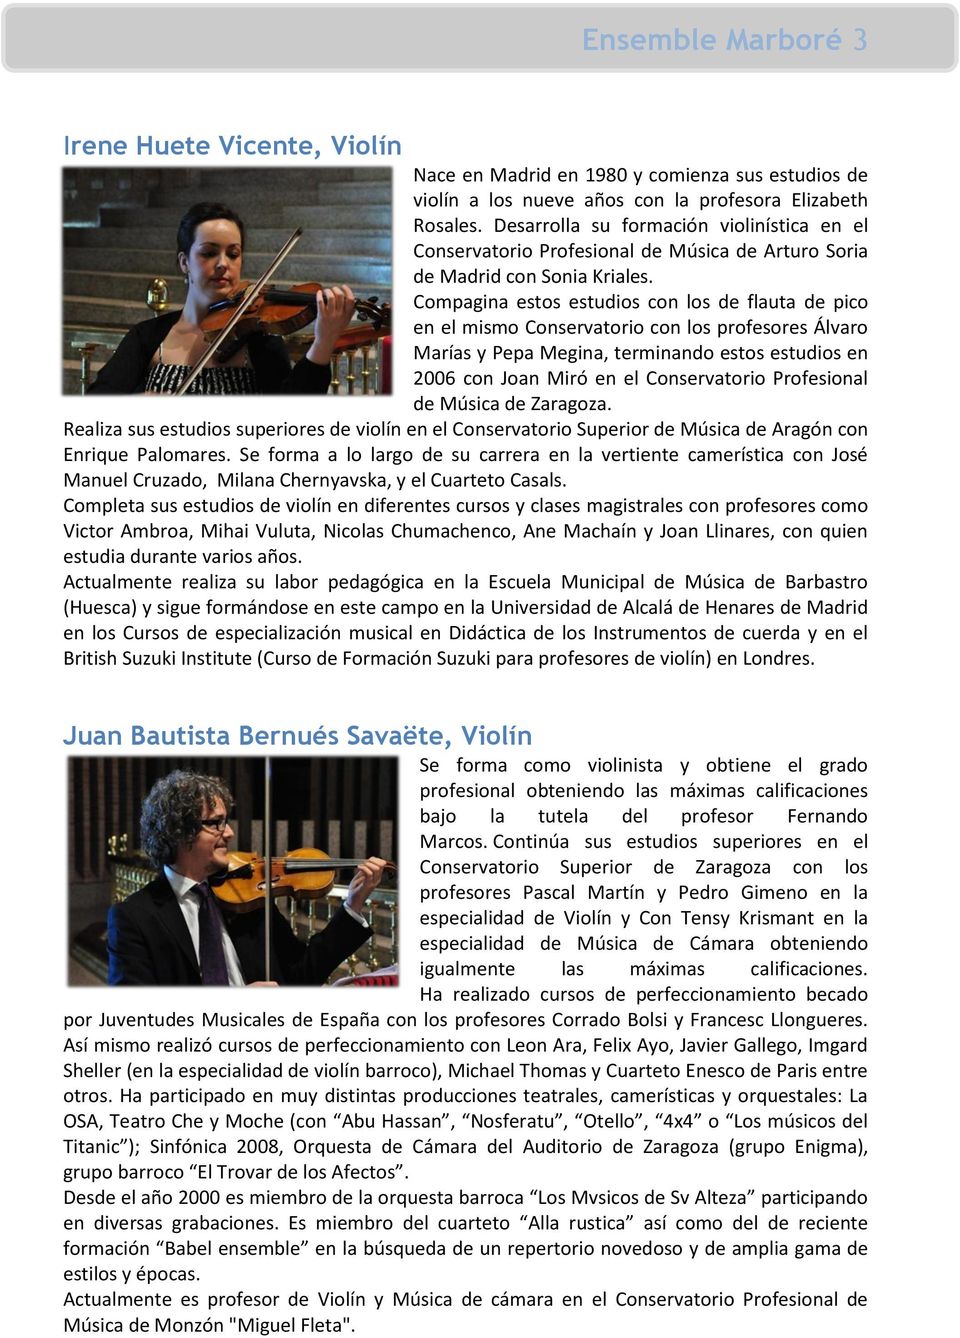 Compagina estos estudios con los de flauta de pico en el mismo Conservatorio con los profesores Álvaro Marías y Pepa Megina, terminando estos estudios en 2006 con Joan Miró en el Conservatorio